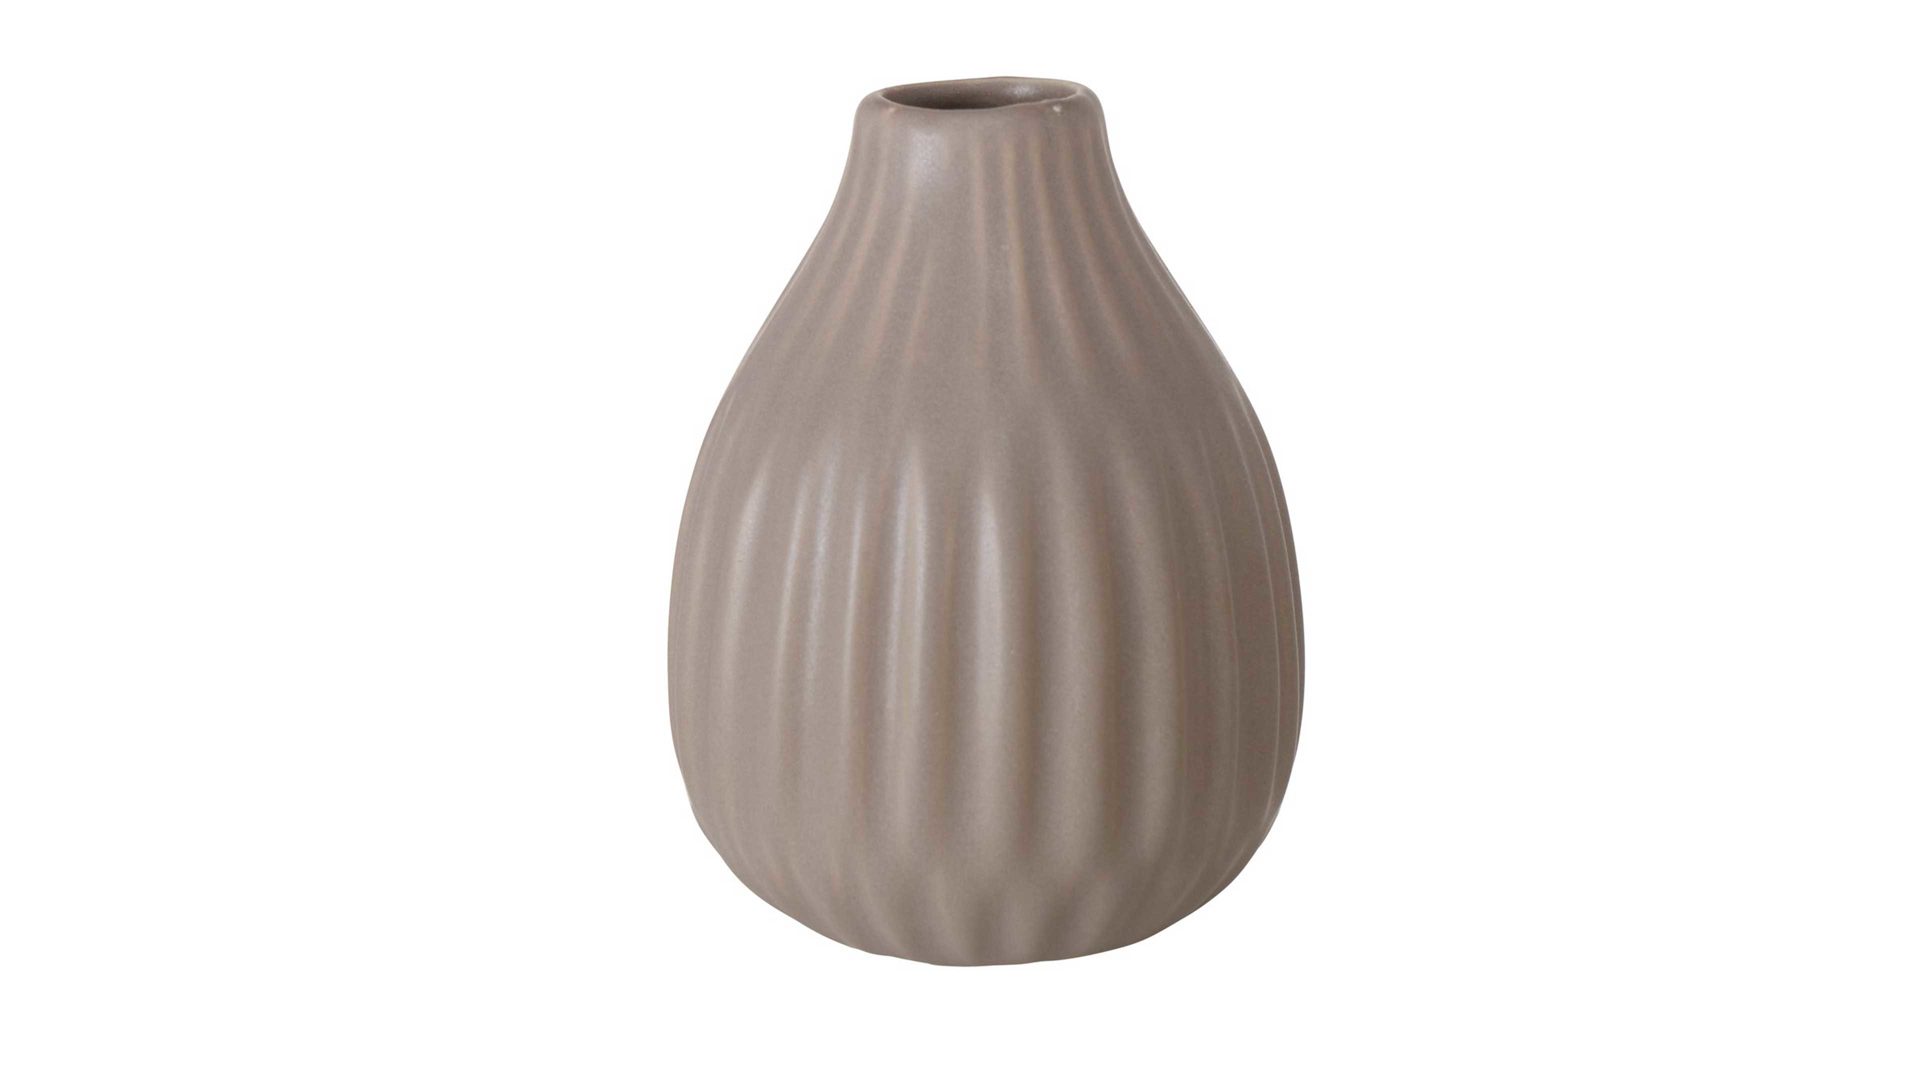 Vase Interliving BEST BUDDYS! aus Keramik in Grau Interliving BEST BUDDYS! Vase Esko mattgraues Porzellan - Durchmesser ca. 10 cm